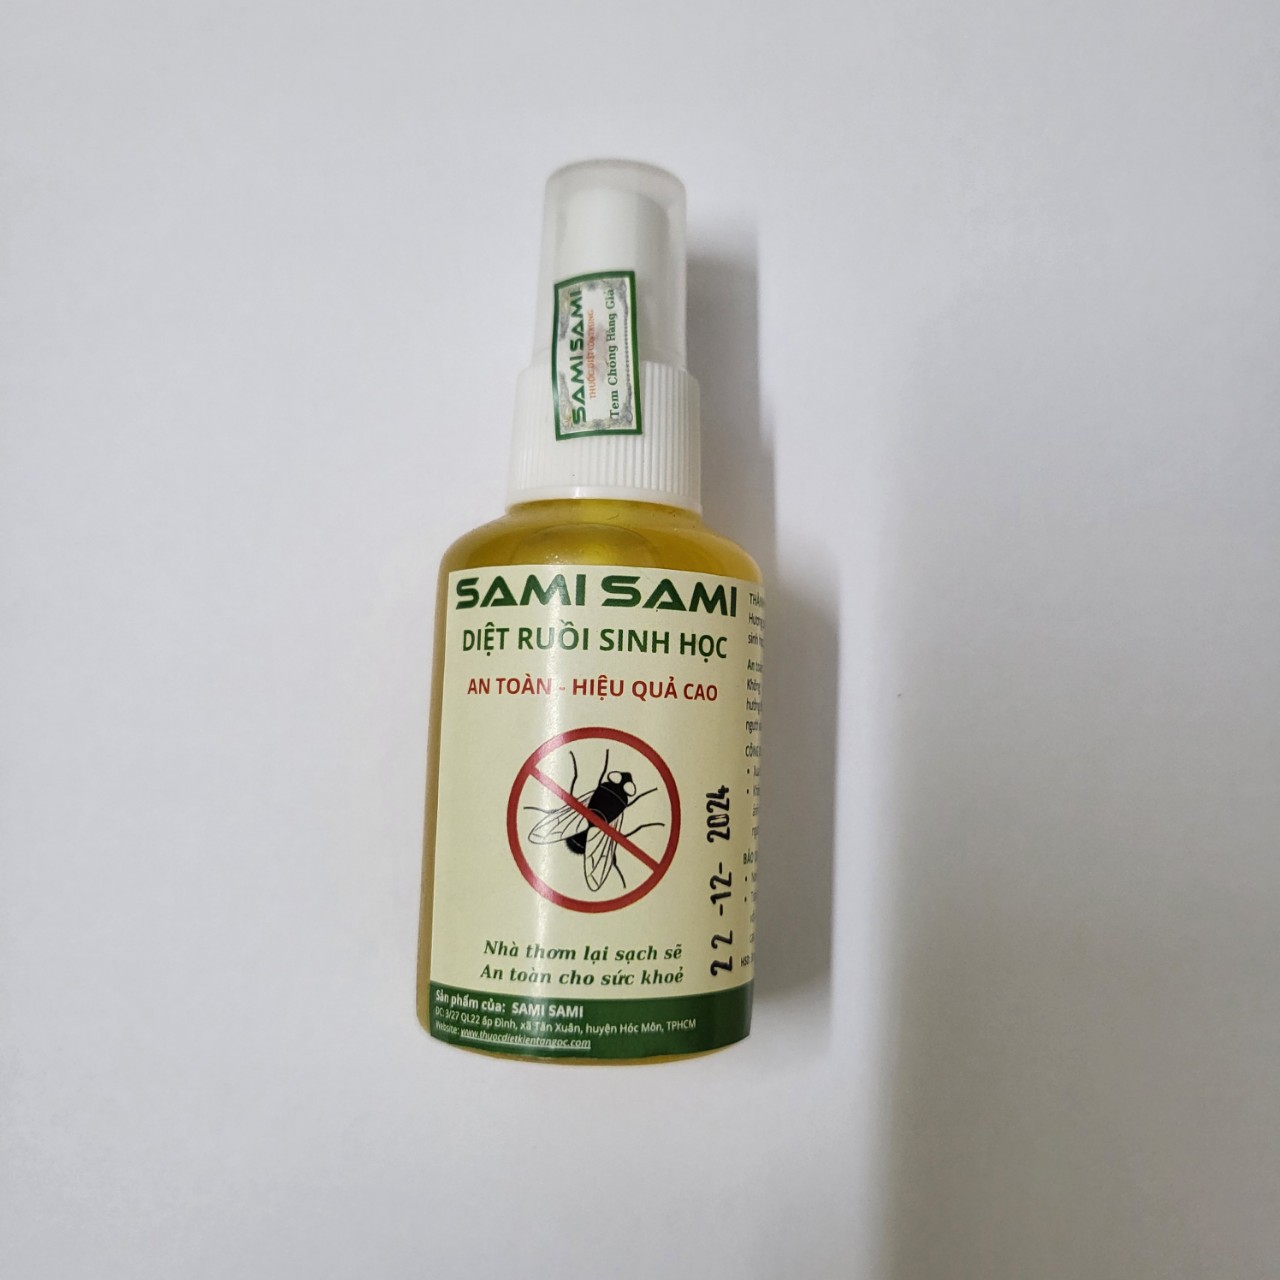 Thuốc diệt ruồi sinh học SAMI SAMI, diệt ruồi không mùi, diệt ruồi tận gốc hiệu quả cao, an toàn cho sức khoẻ